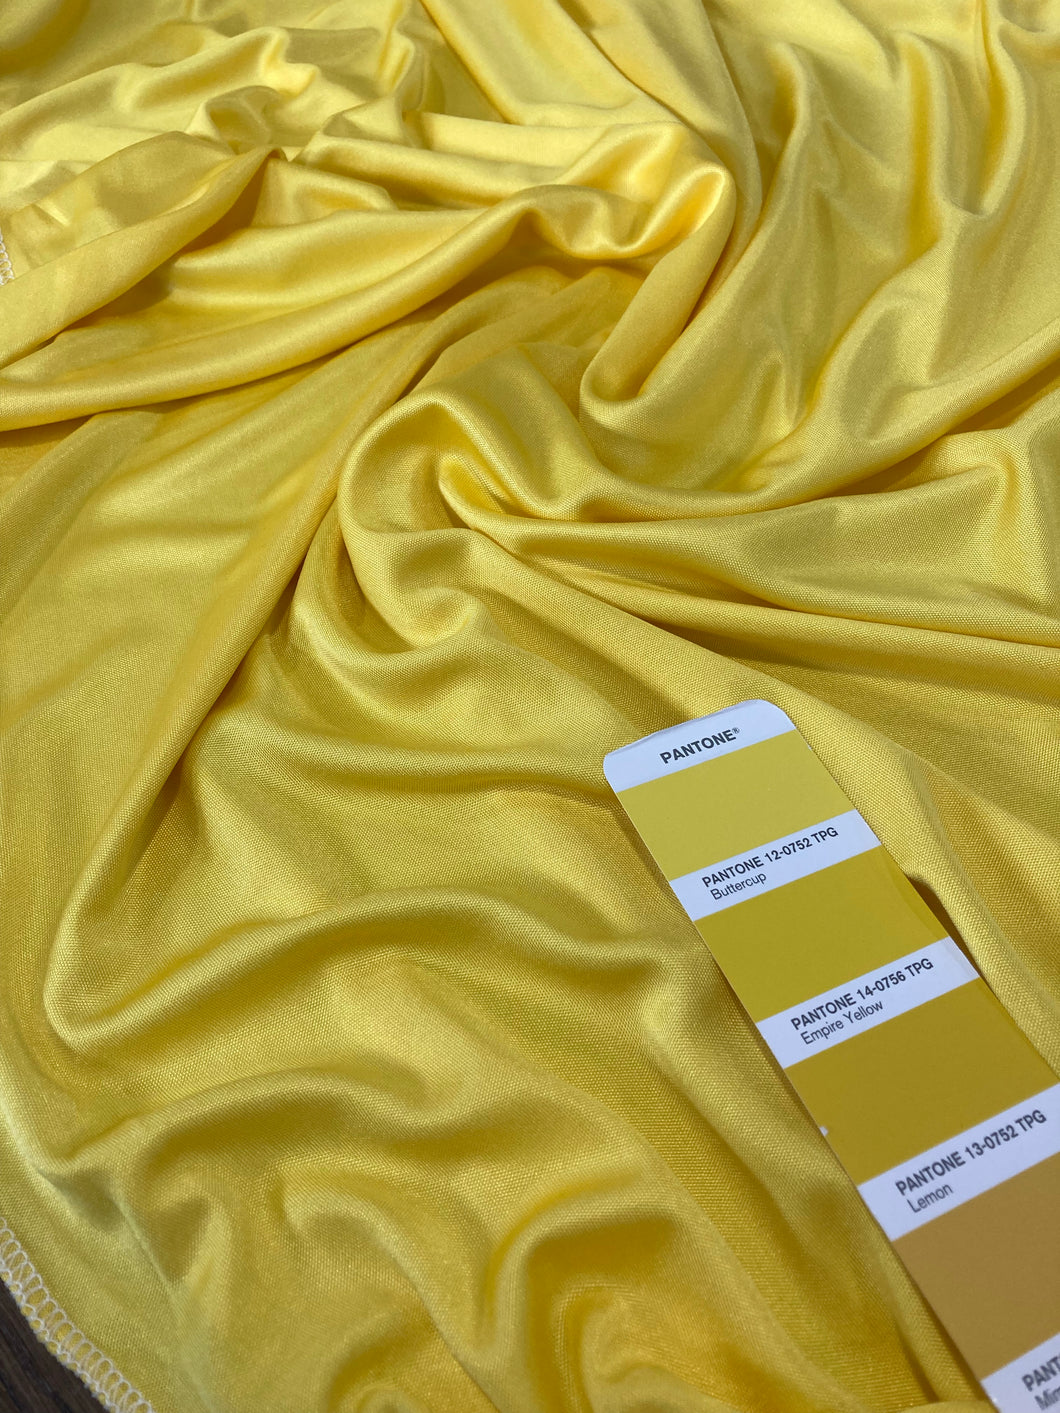 Maglia di seta gialla: 38€/m